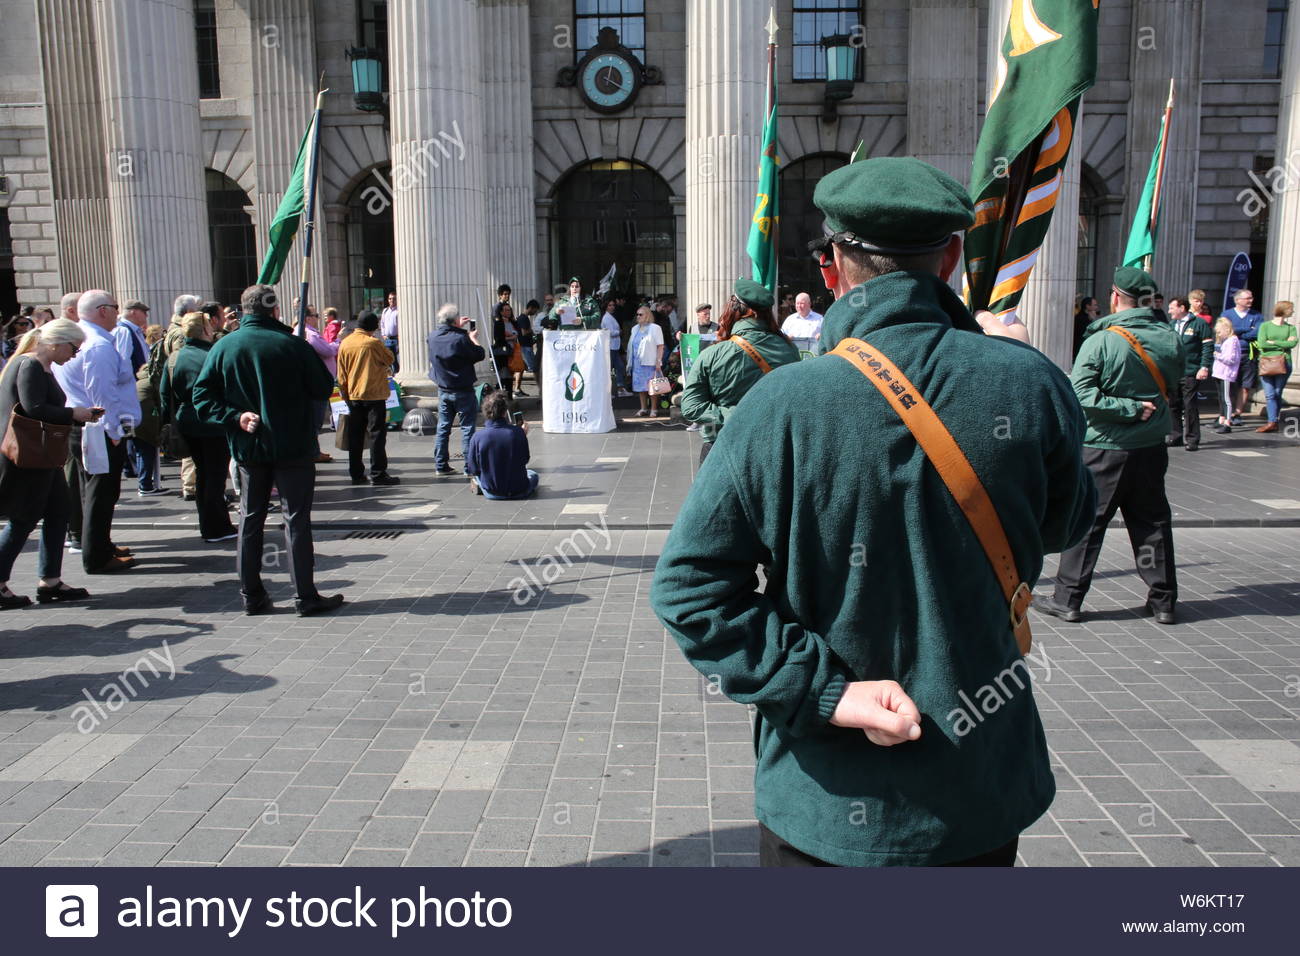 Un défilé militaire a eu lieu à Dublin pour commémorer le 1916 à la hausse. Militants en uniforme de style militaire ont défilé à Dublin, suivi d'un s Banque D'Images